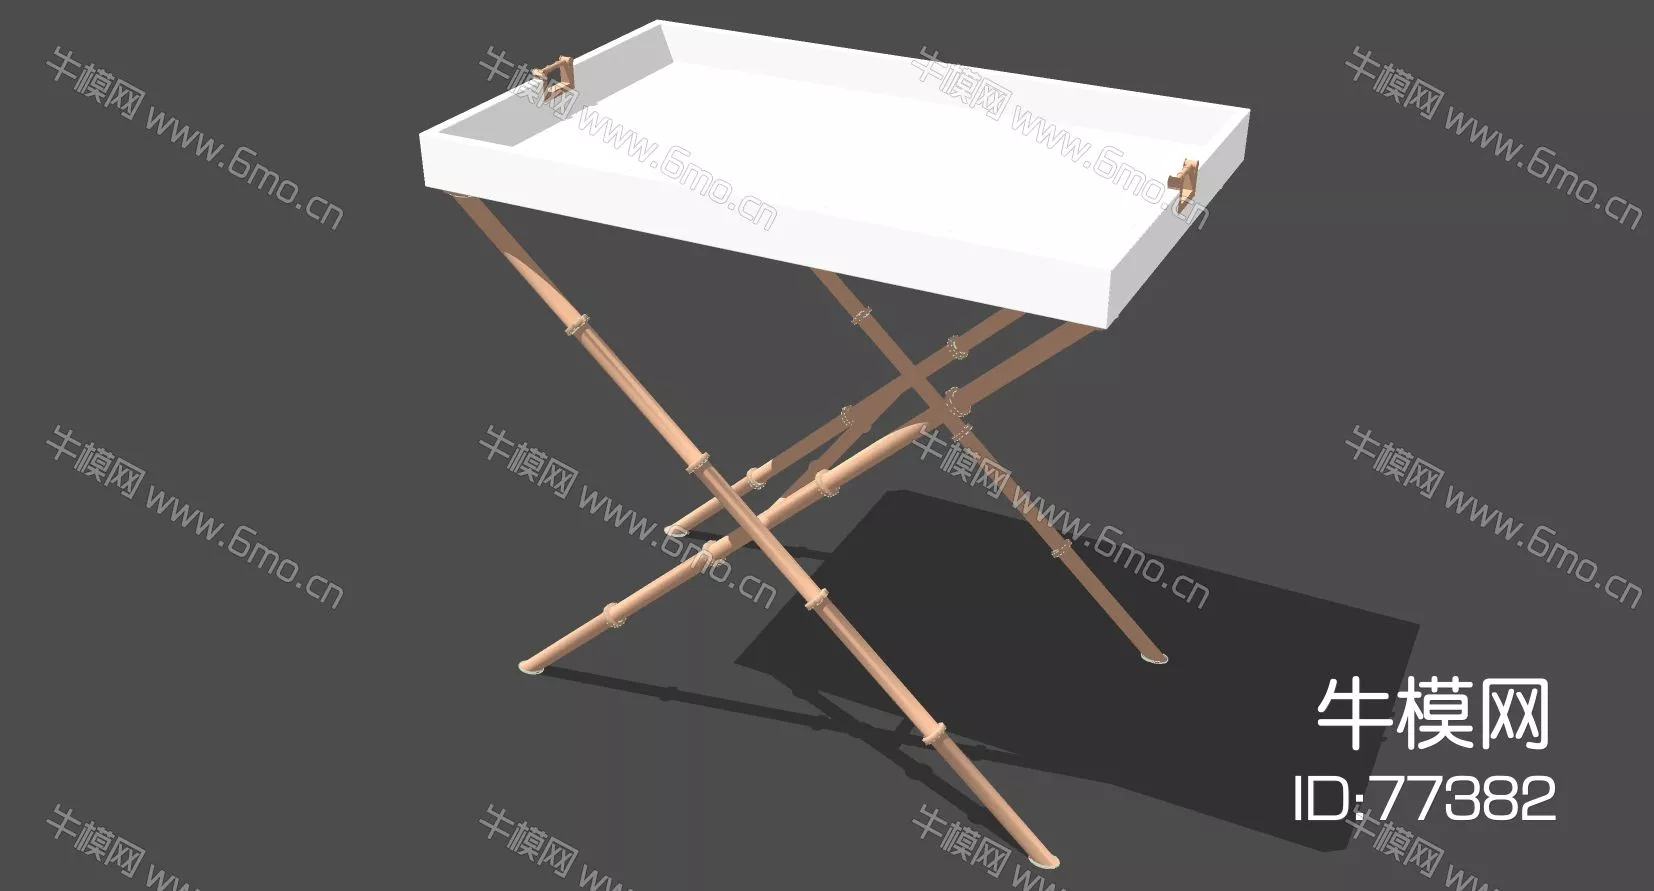 MODERN SIDE TABLE - SKETCHUP 3D MODEL - ENSCAPE - 77382